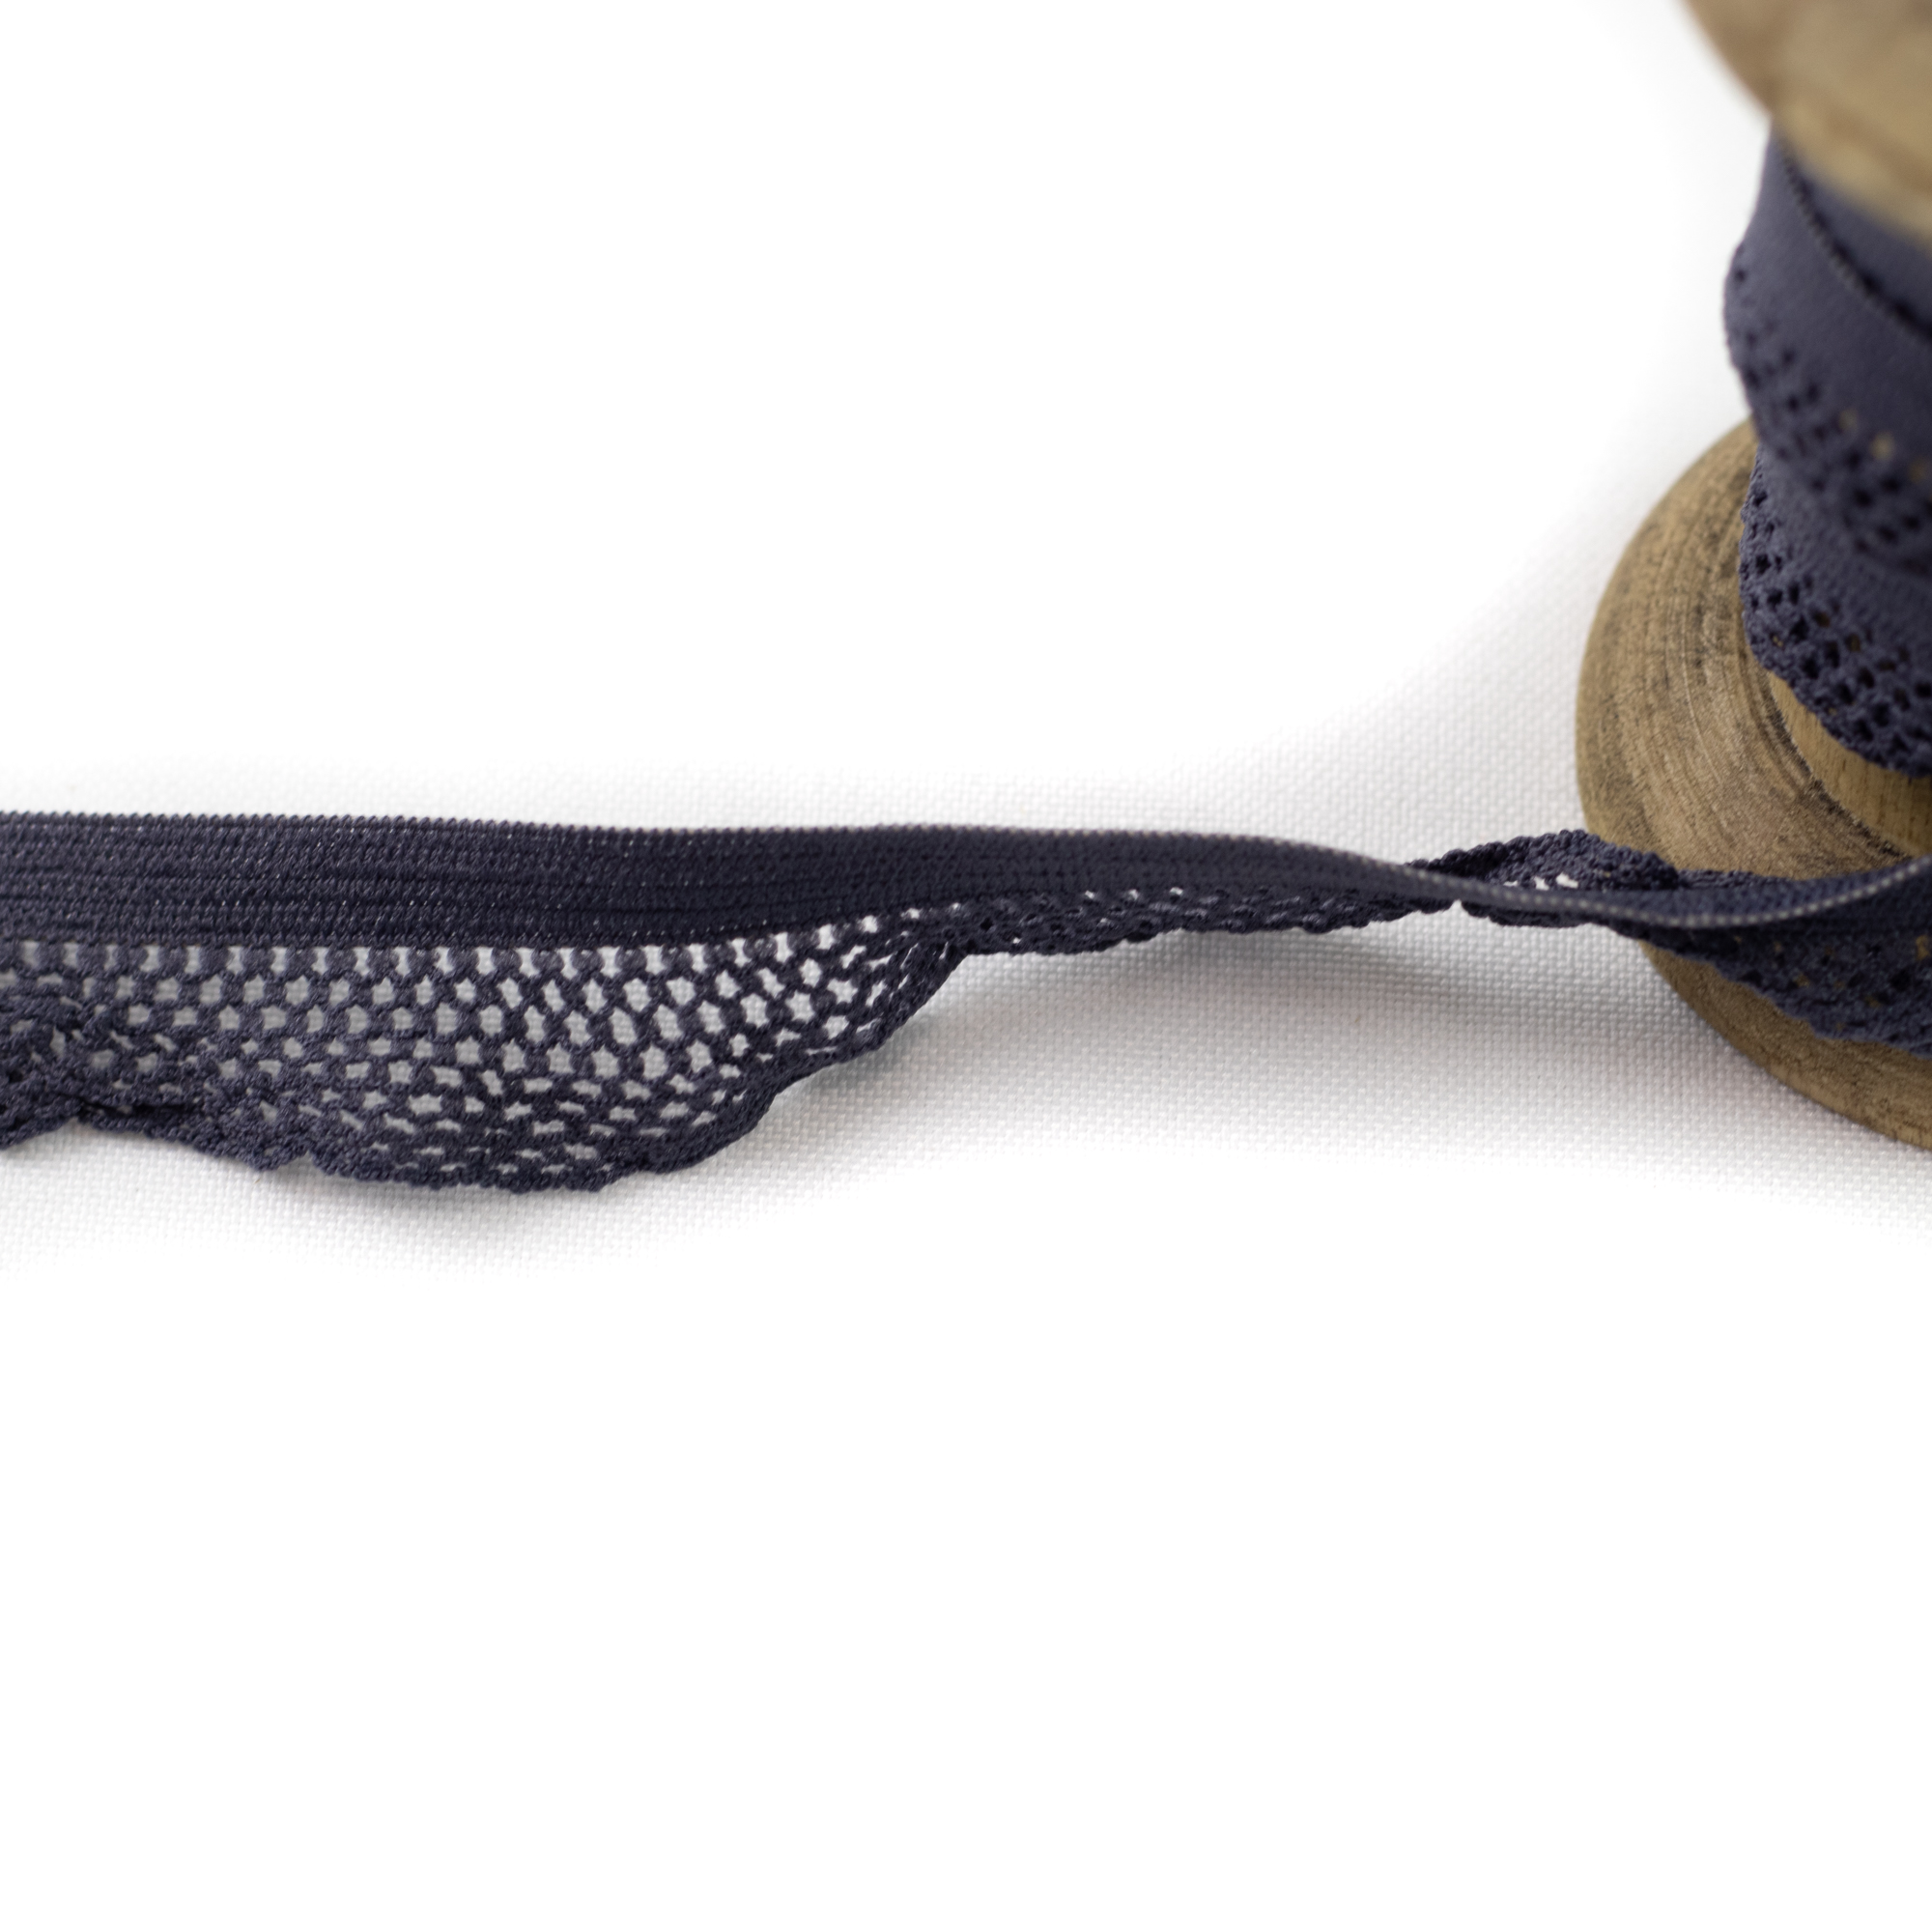 Gummiband Wäschegummi Zierband Uni mit Netz 1,5 cm Dunkelgrau